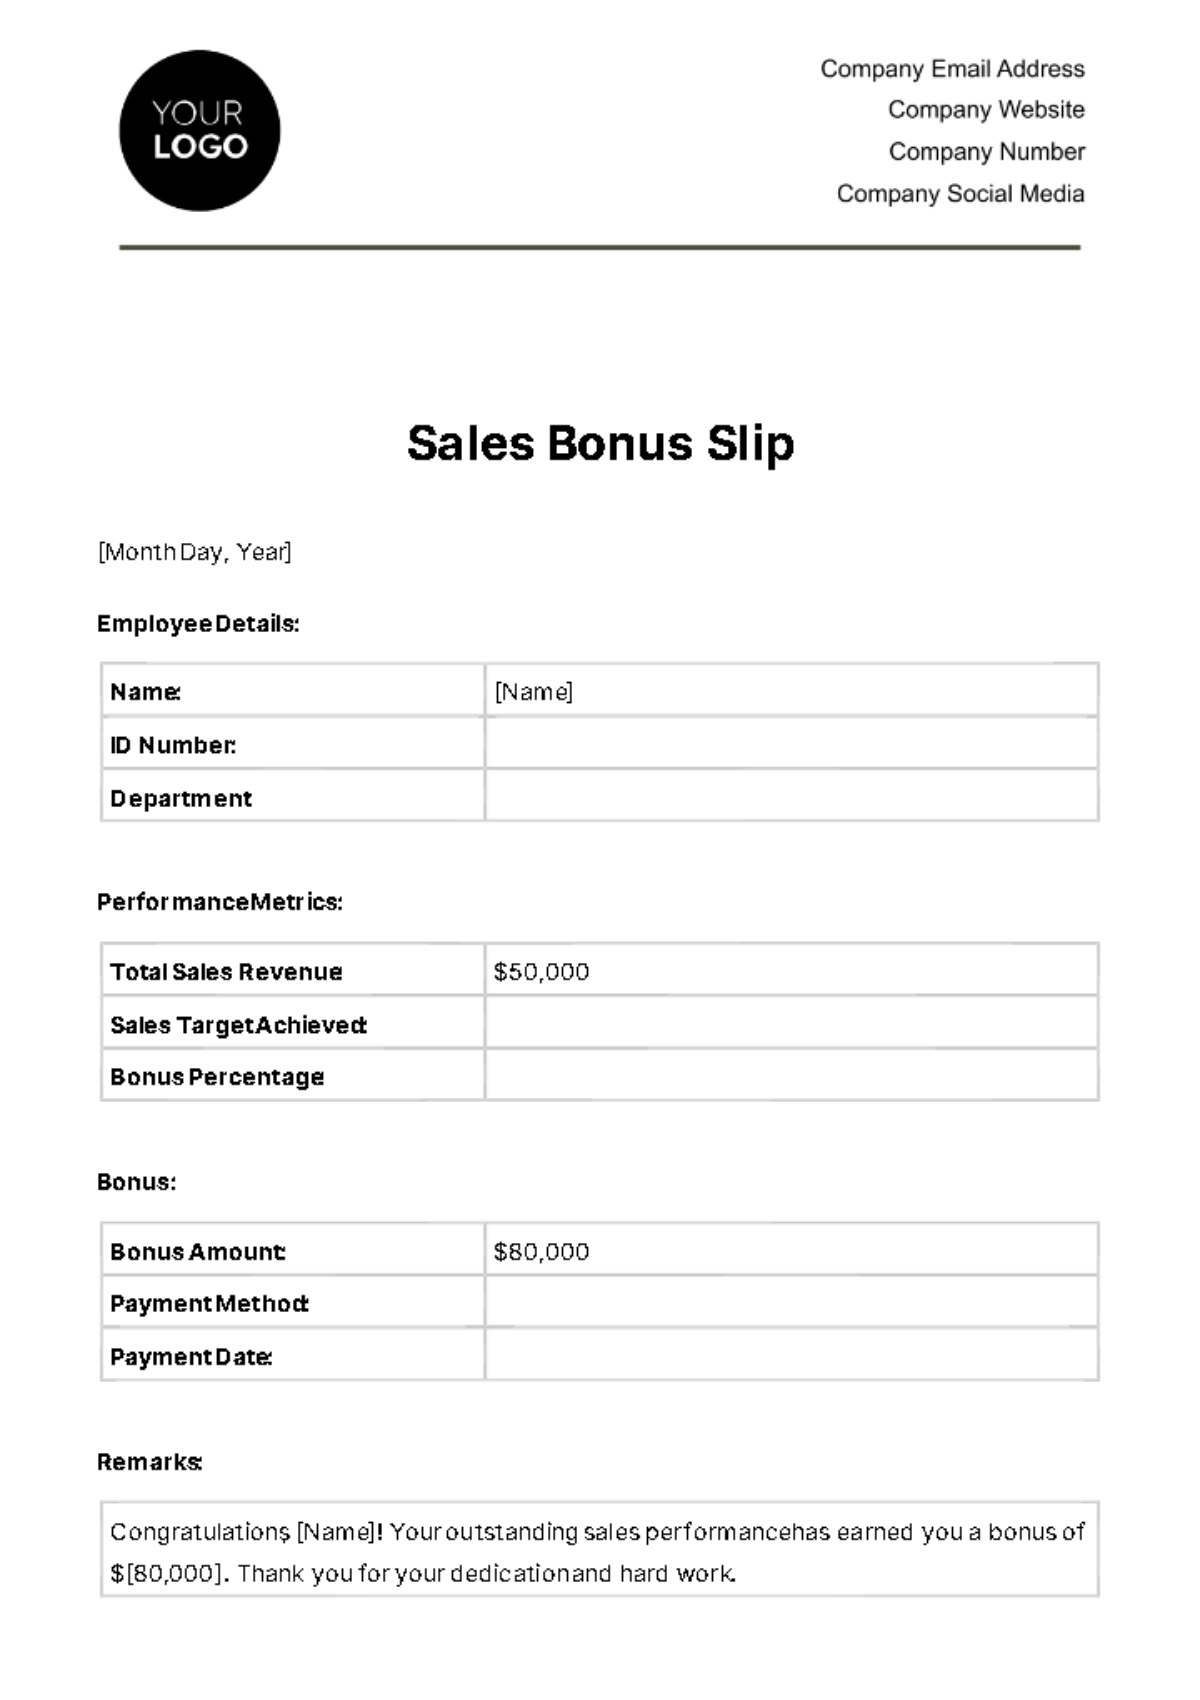 Free Sales Bonus Slip Template